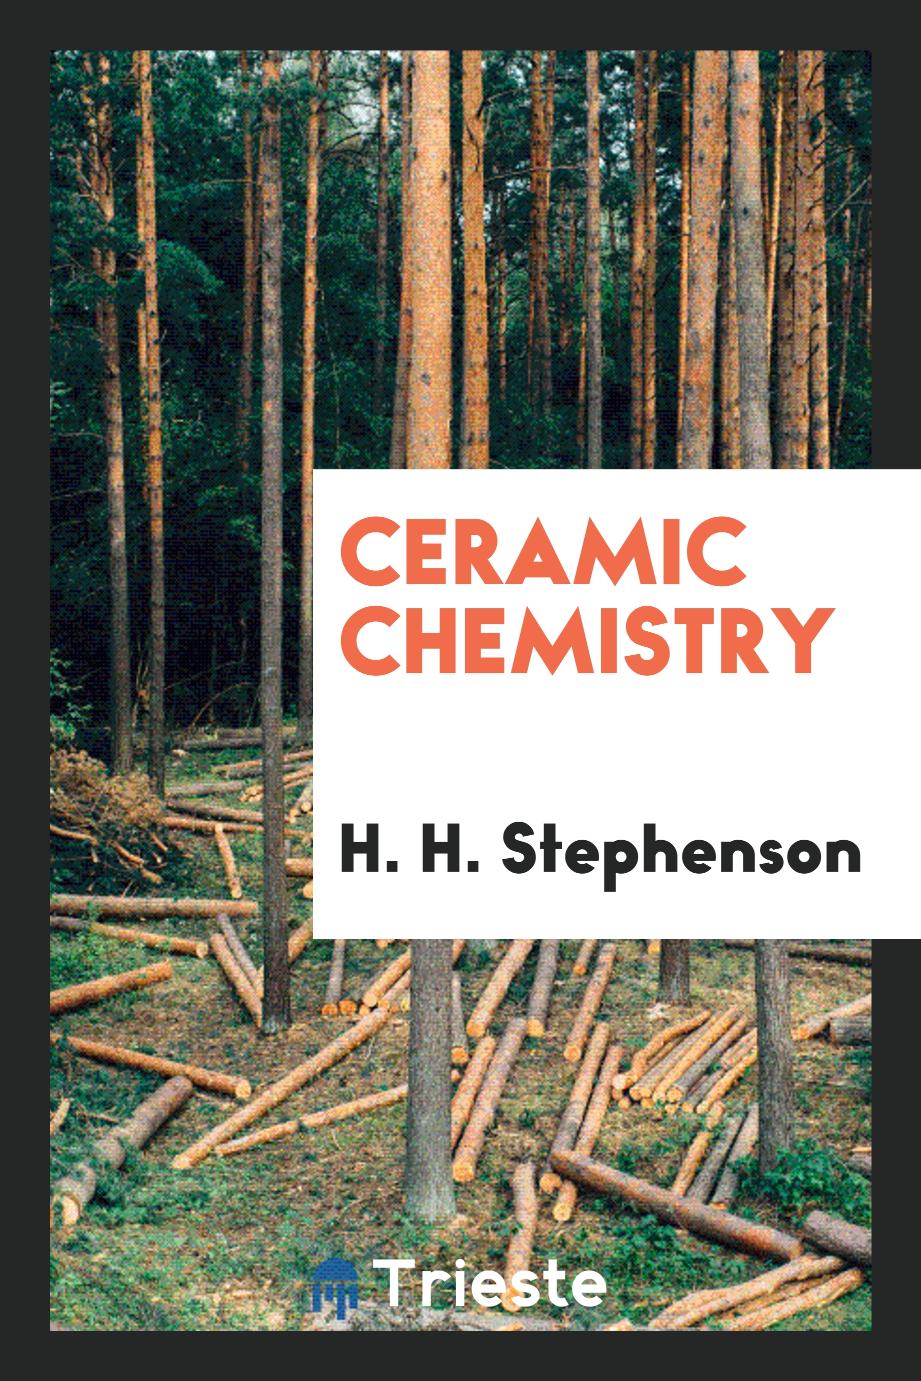 Ceramic Chemistry